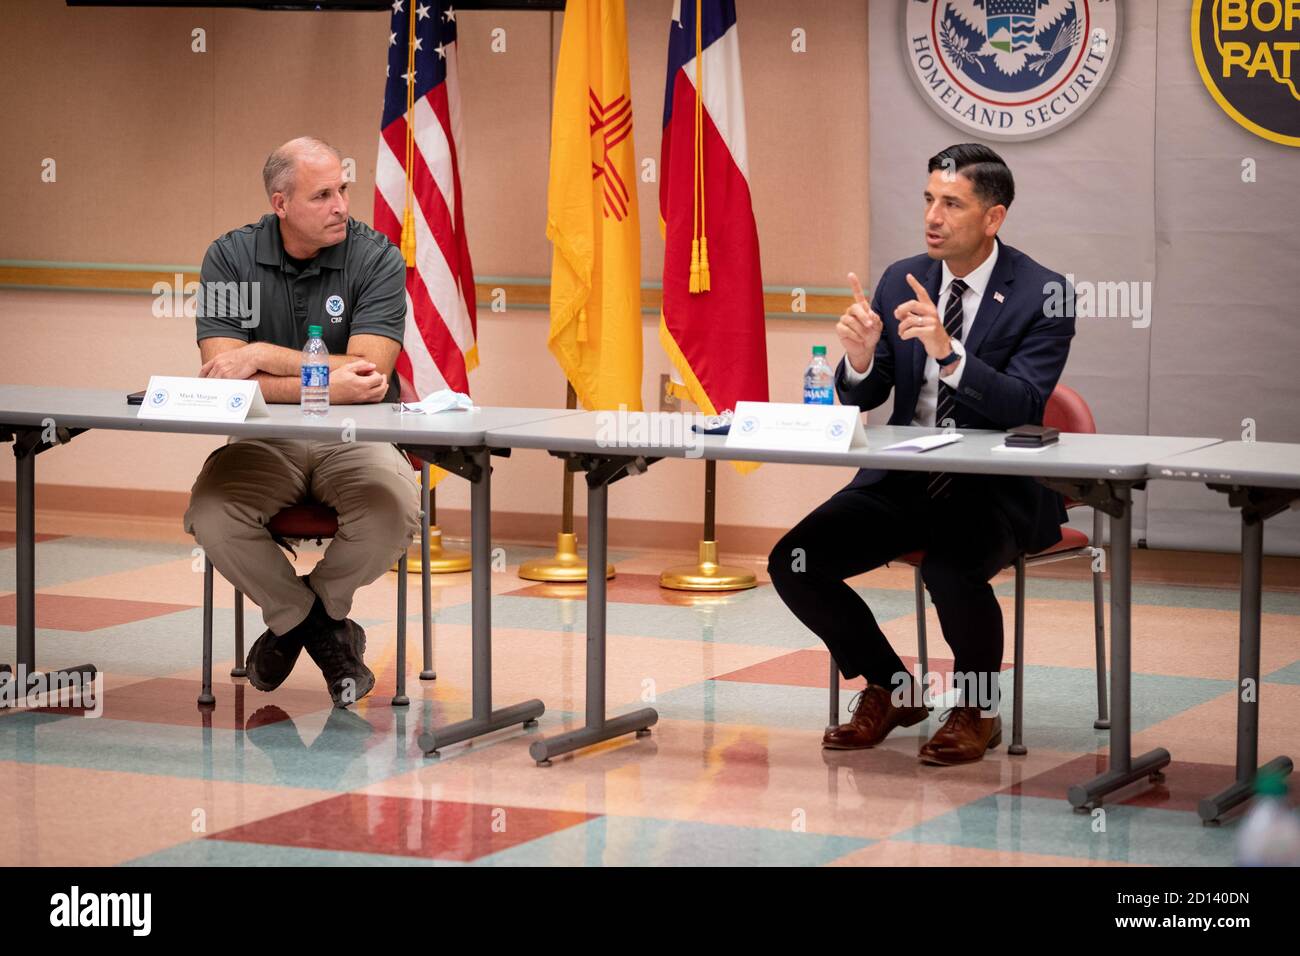 El Comisionado interino Mark Morgan y el Secretario interino del Departamento de Seguridad Nacional, Chad Wolf, se reúnen con los líderes locales del DHS y el CBP durante una visita al Puerto de Entrada de Santa Teresa, Nuevo México, el 26 de agosto de 2020. CBP Foto de stock